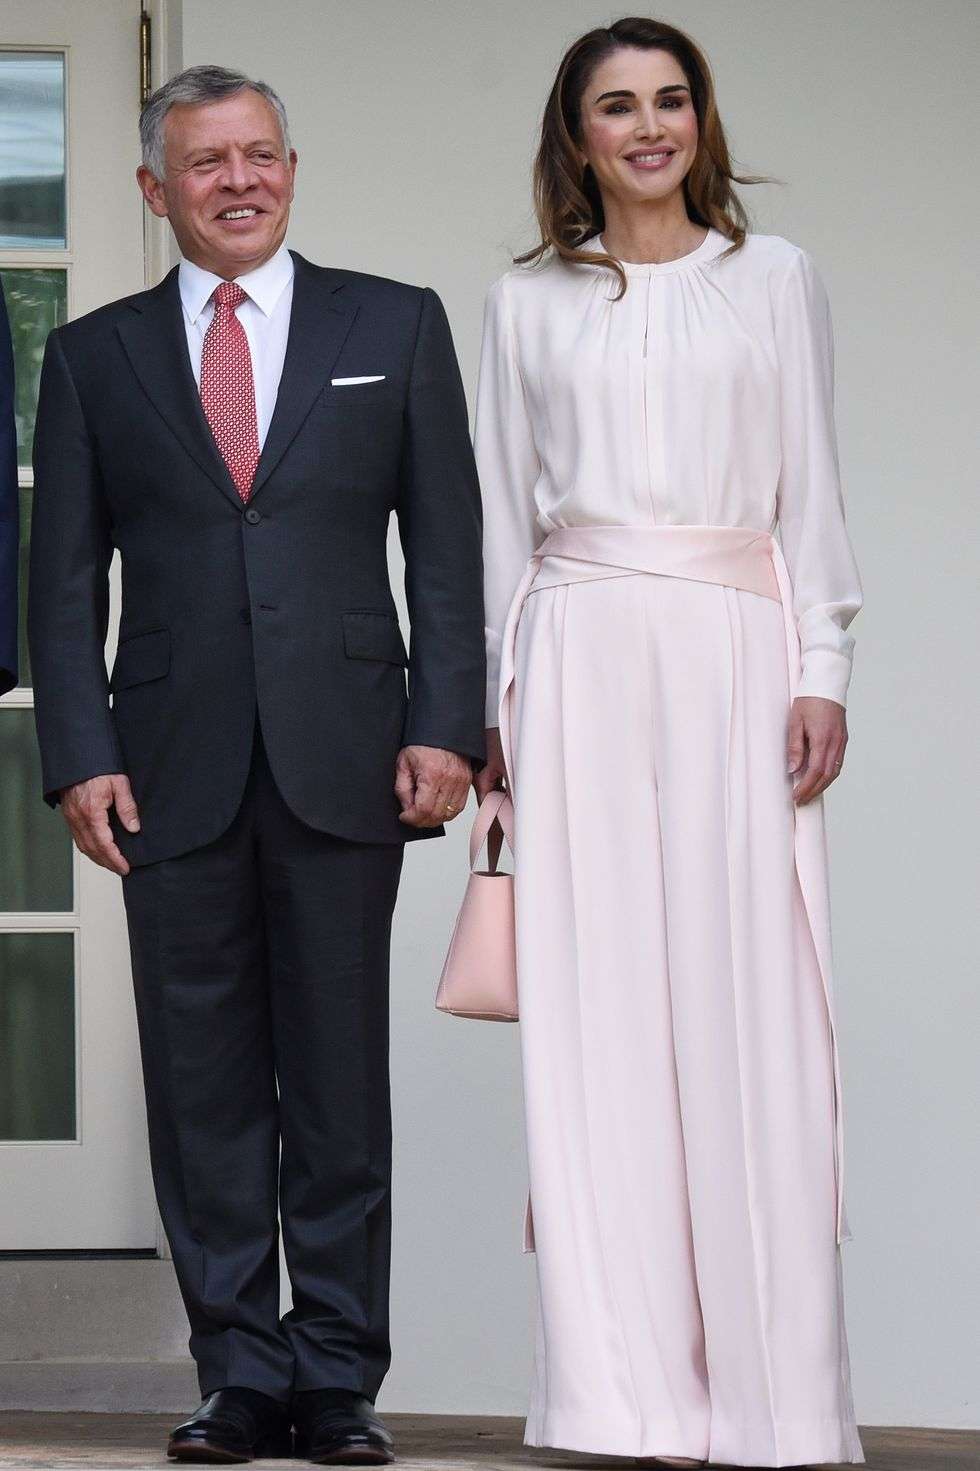 إطلالات مستوحاة من الملكة رانيا العبدالله تناسب العروس المحجبة